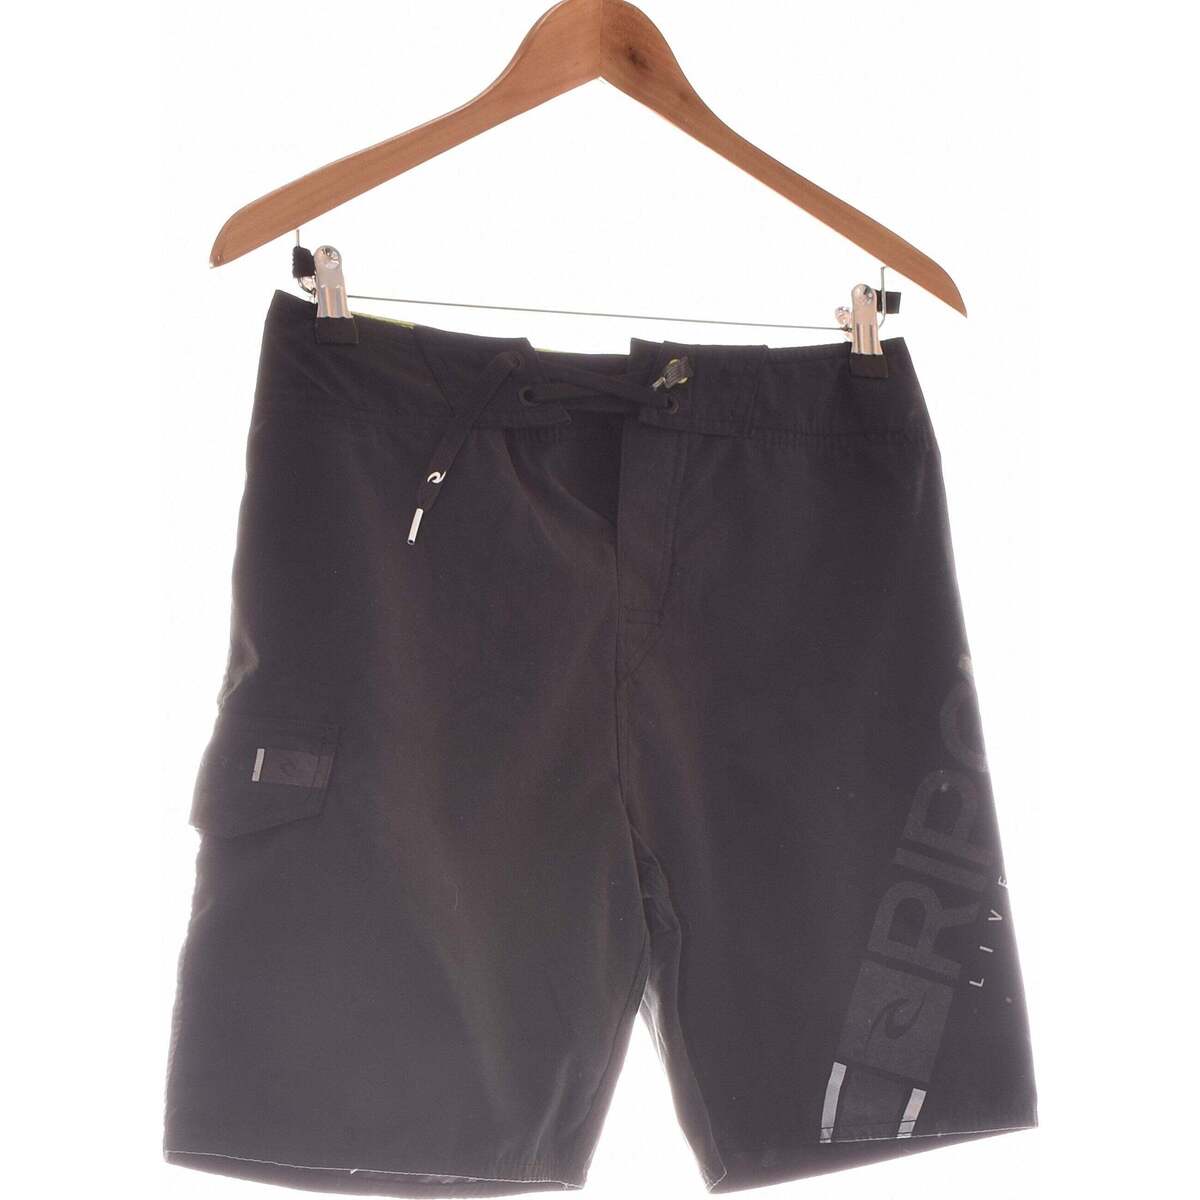 Vêtements Femme jeans Shorts / Bermudas Rip Curl short  34 - T0 - XS Noir Noir